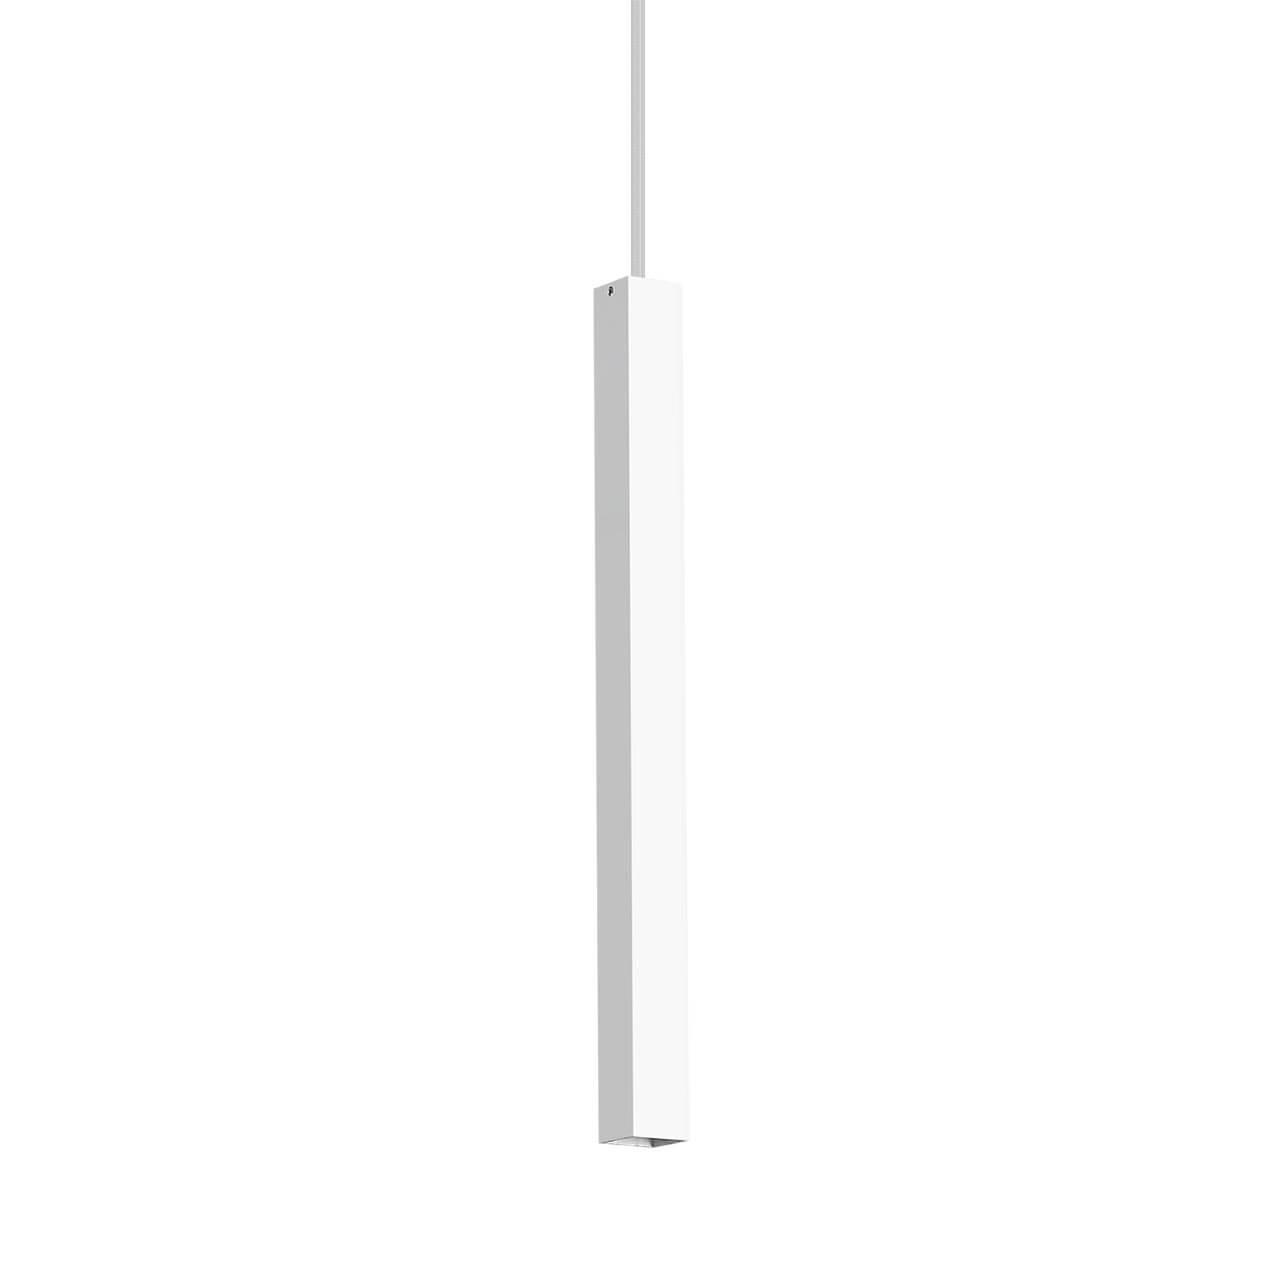 Подвесной светодиодный светильник Ideal Lux Ultrathin D040 Square Bianco 194189 светильник square led 72 вт 2700 6500к изменение оттенков белого света белый